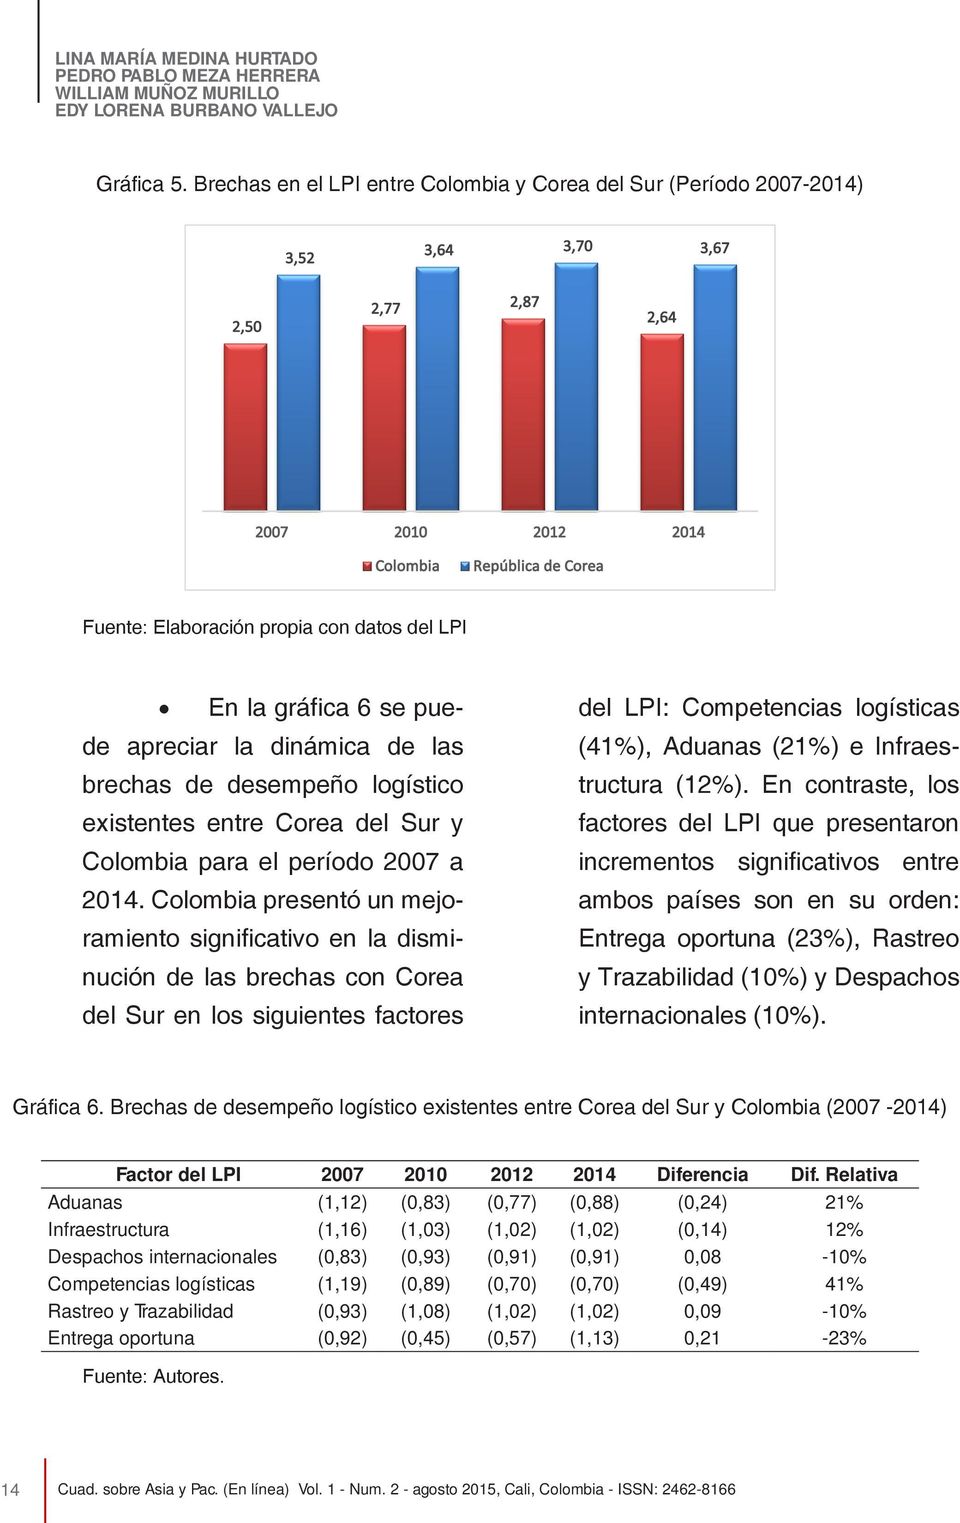 LPI En la gráfica 6 se puede apreciar la dinámica de las brechas de desempeño logístico existentes entre Corea del Sur y Colombia para el período 2007 a 2014.